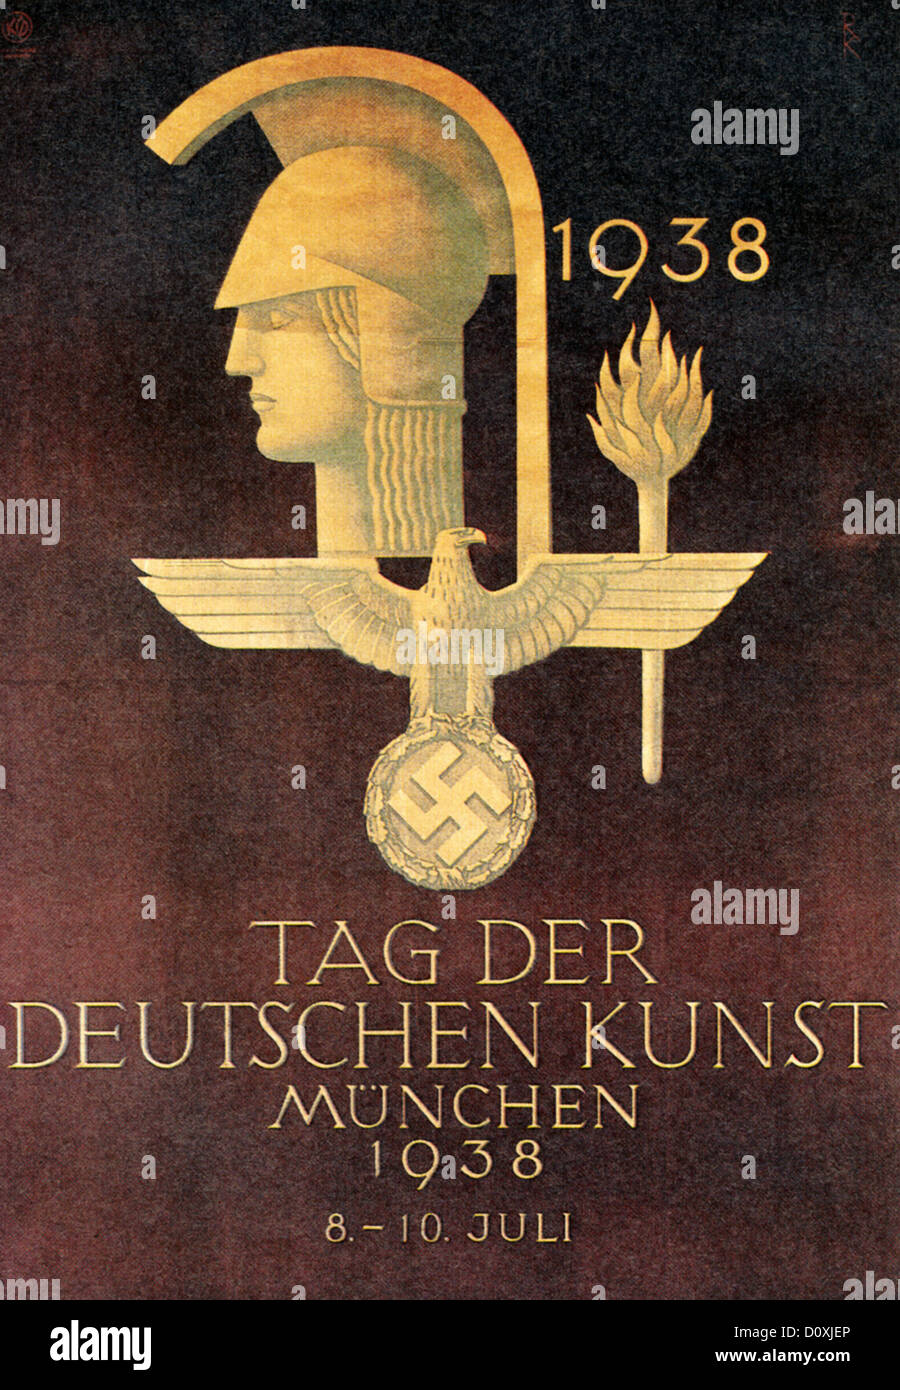 Día del arte alemán, Nazi, exposiciones de arte, la publicidad, el Tercer Reich, Munich, 1938 Foto de stock